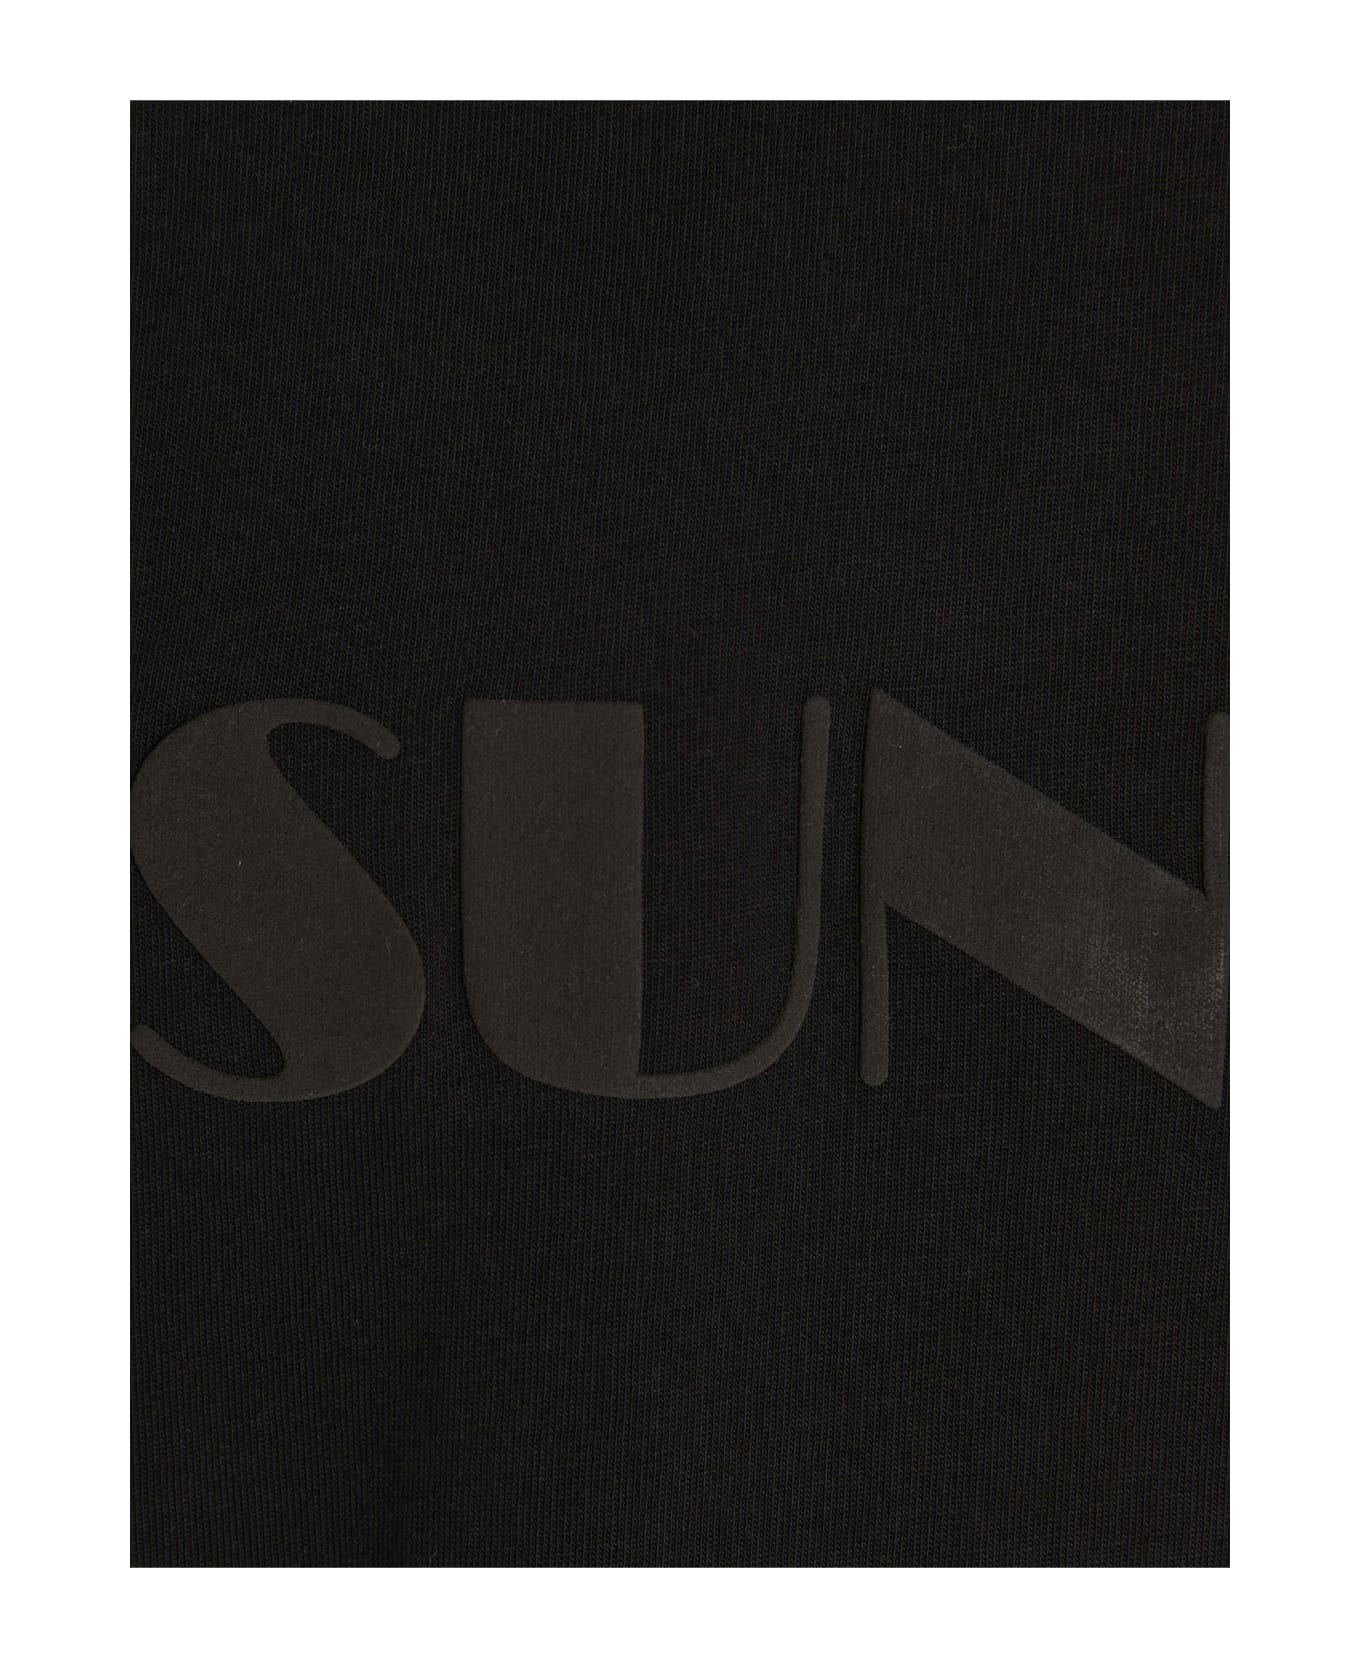 Sunnei Logo T-shirt - Black  